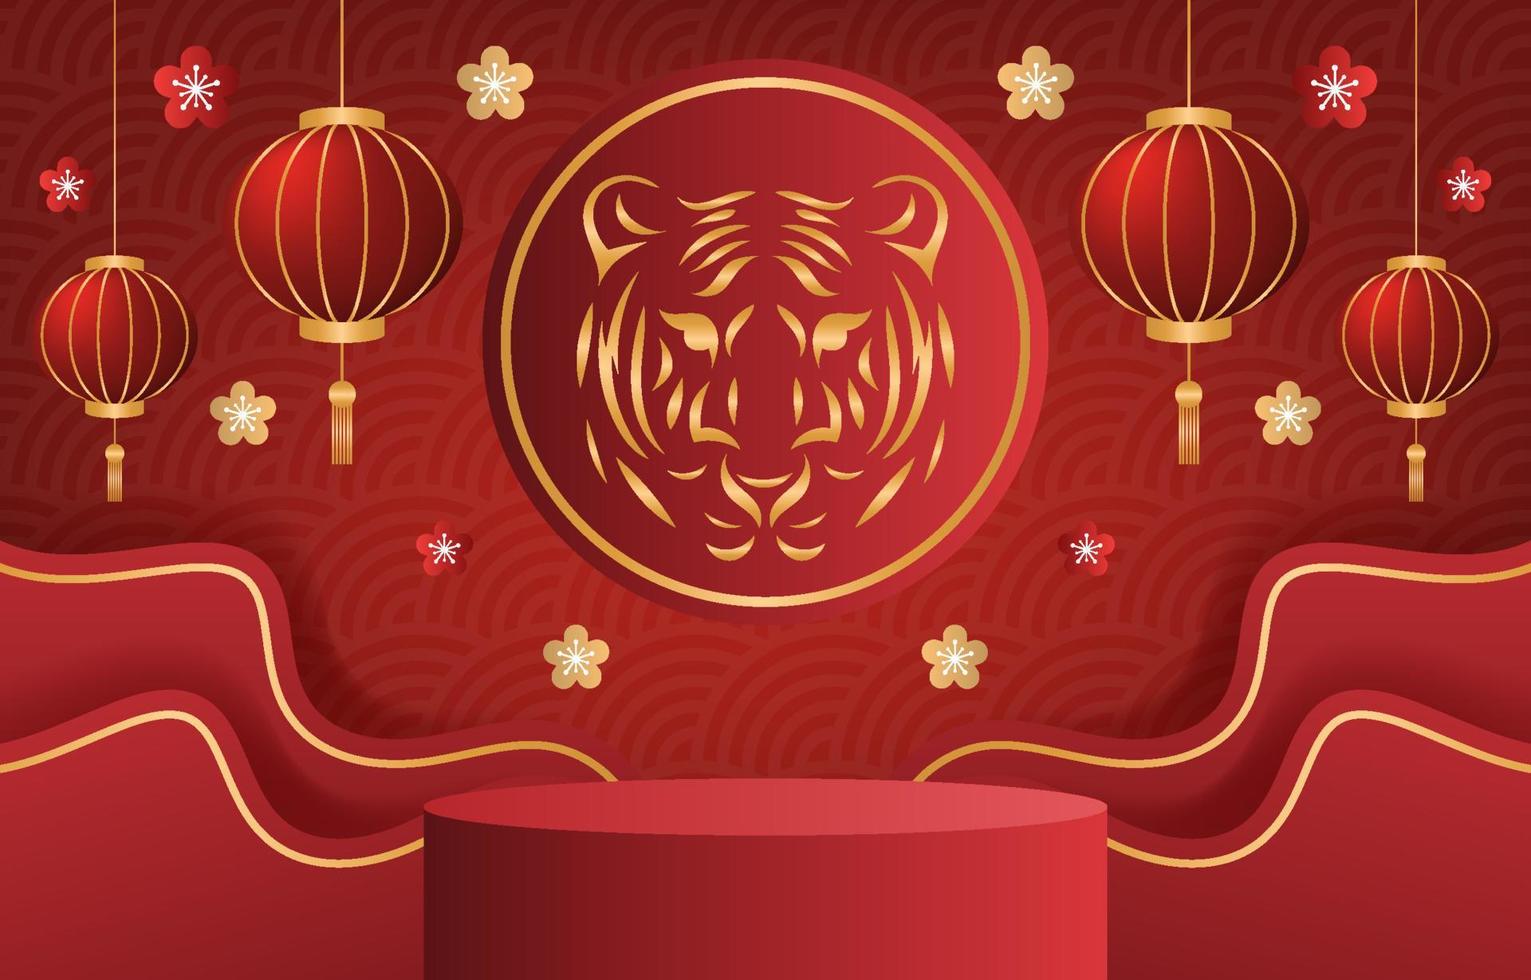 capodanno cinese dello sfondo della tigre vettore